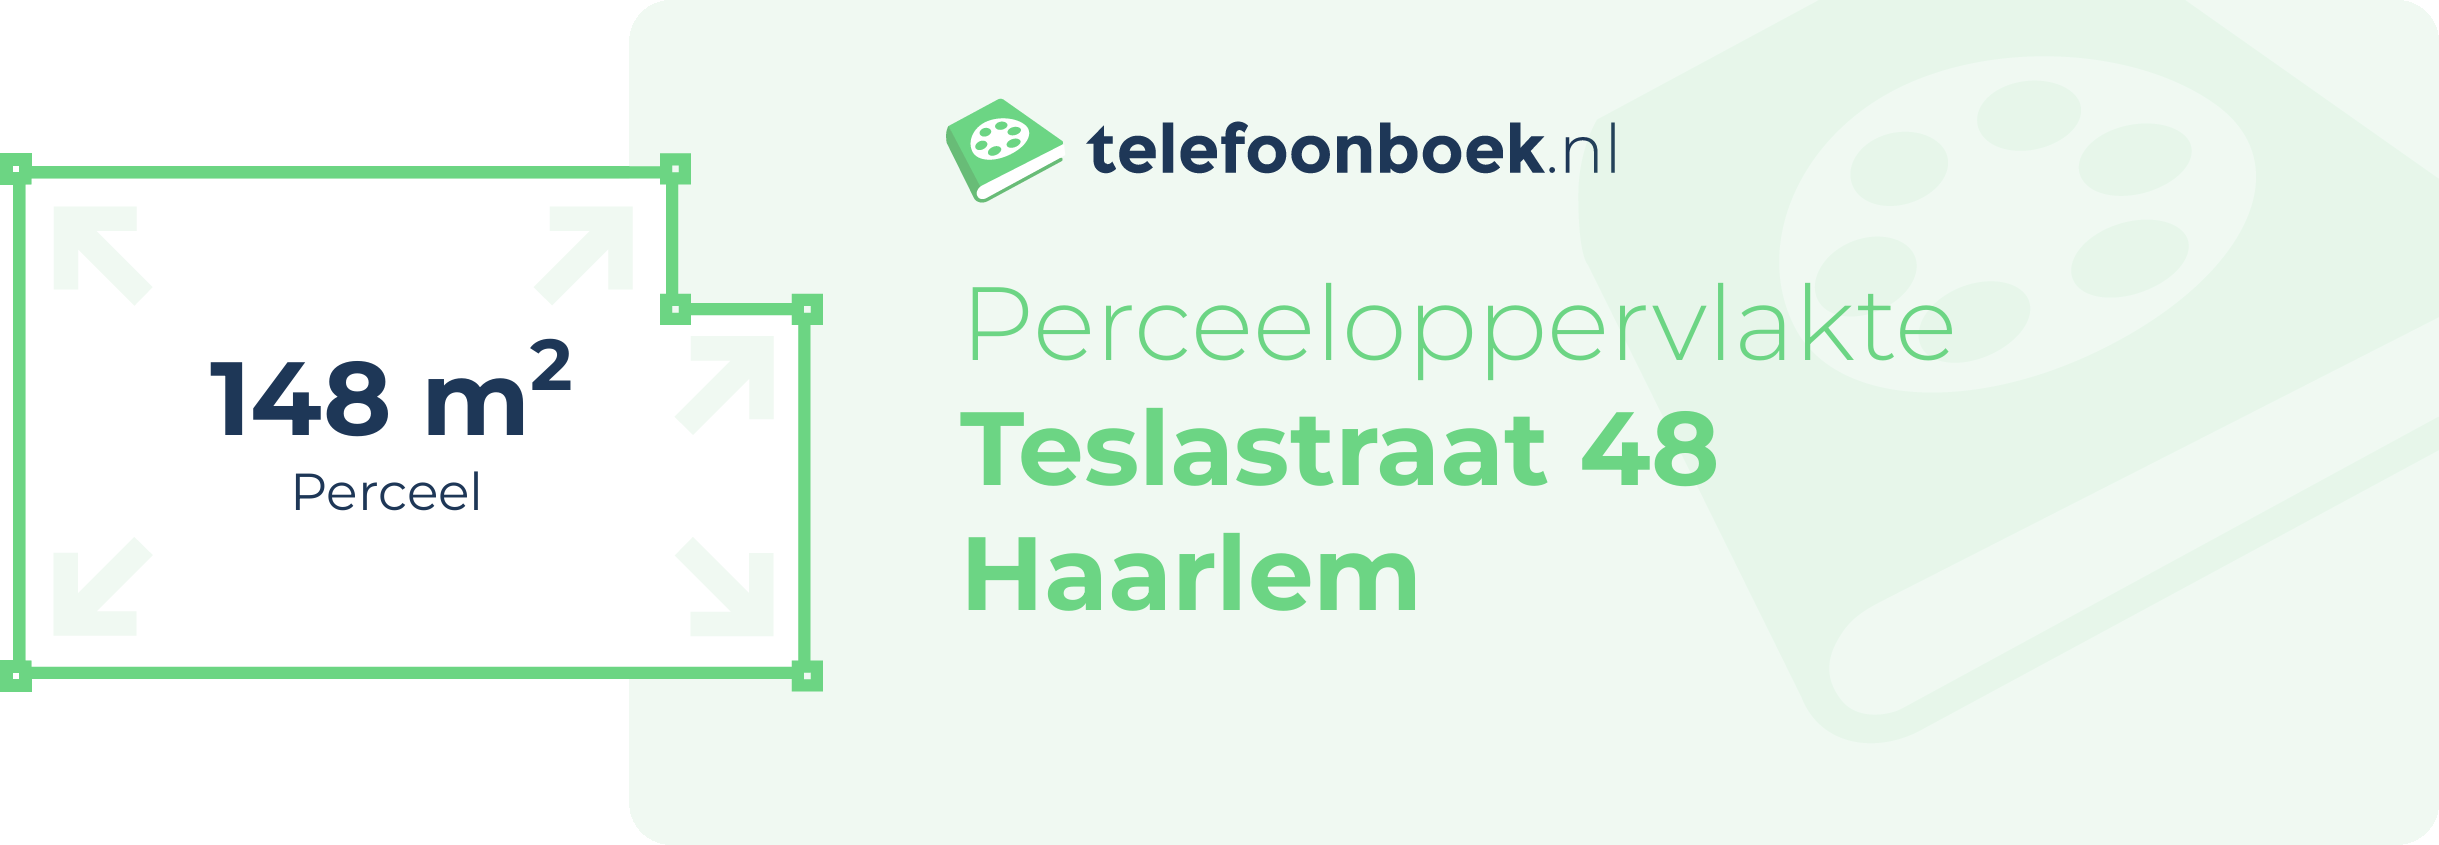 Perceeloppervlakte Teslastraat 48 Haarlem